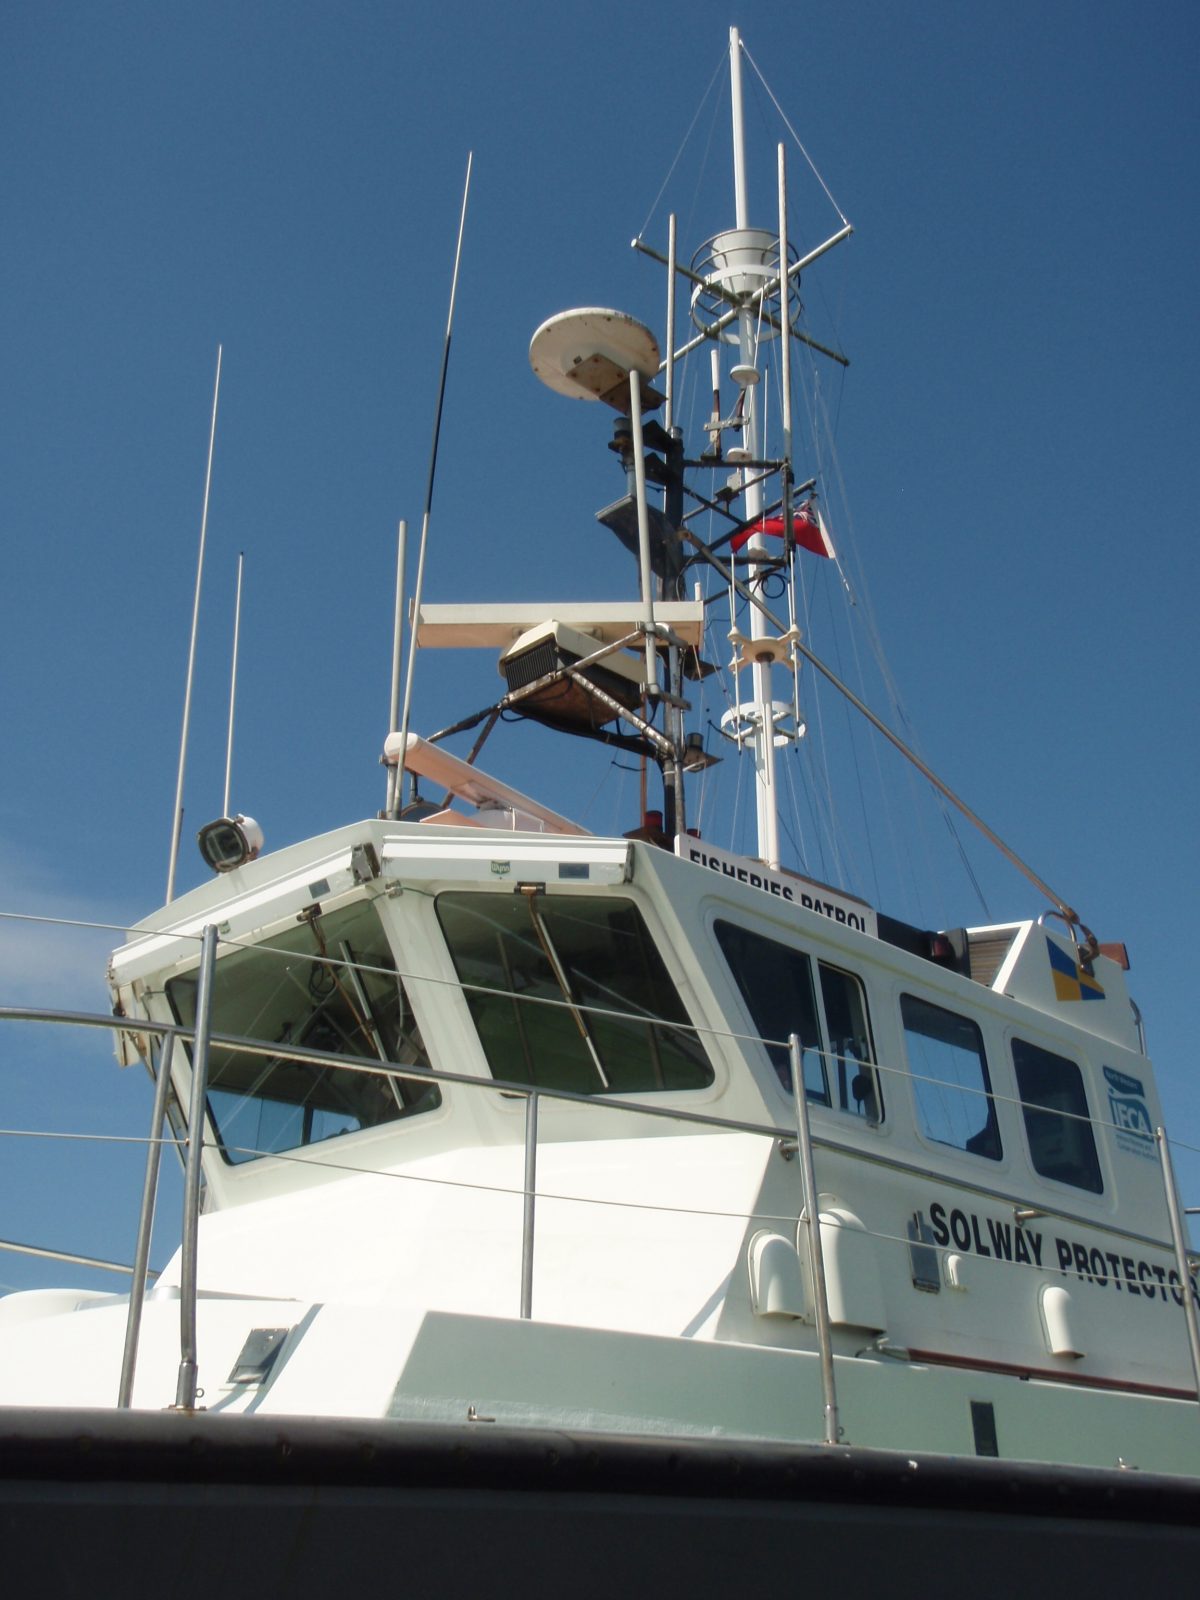 Fisheries patrol vessel Solway Protector